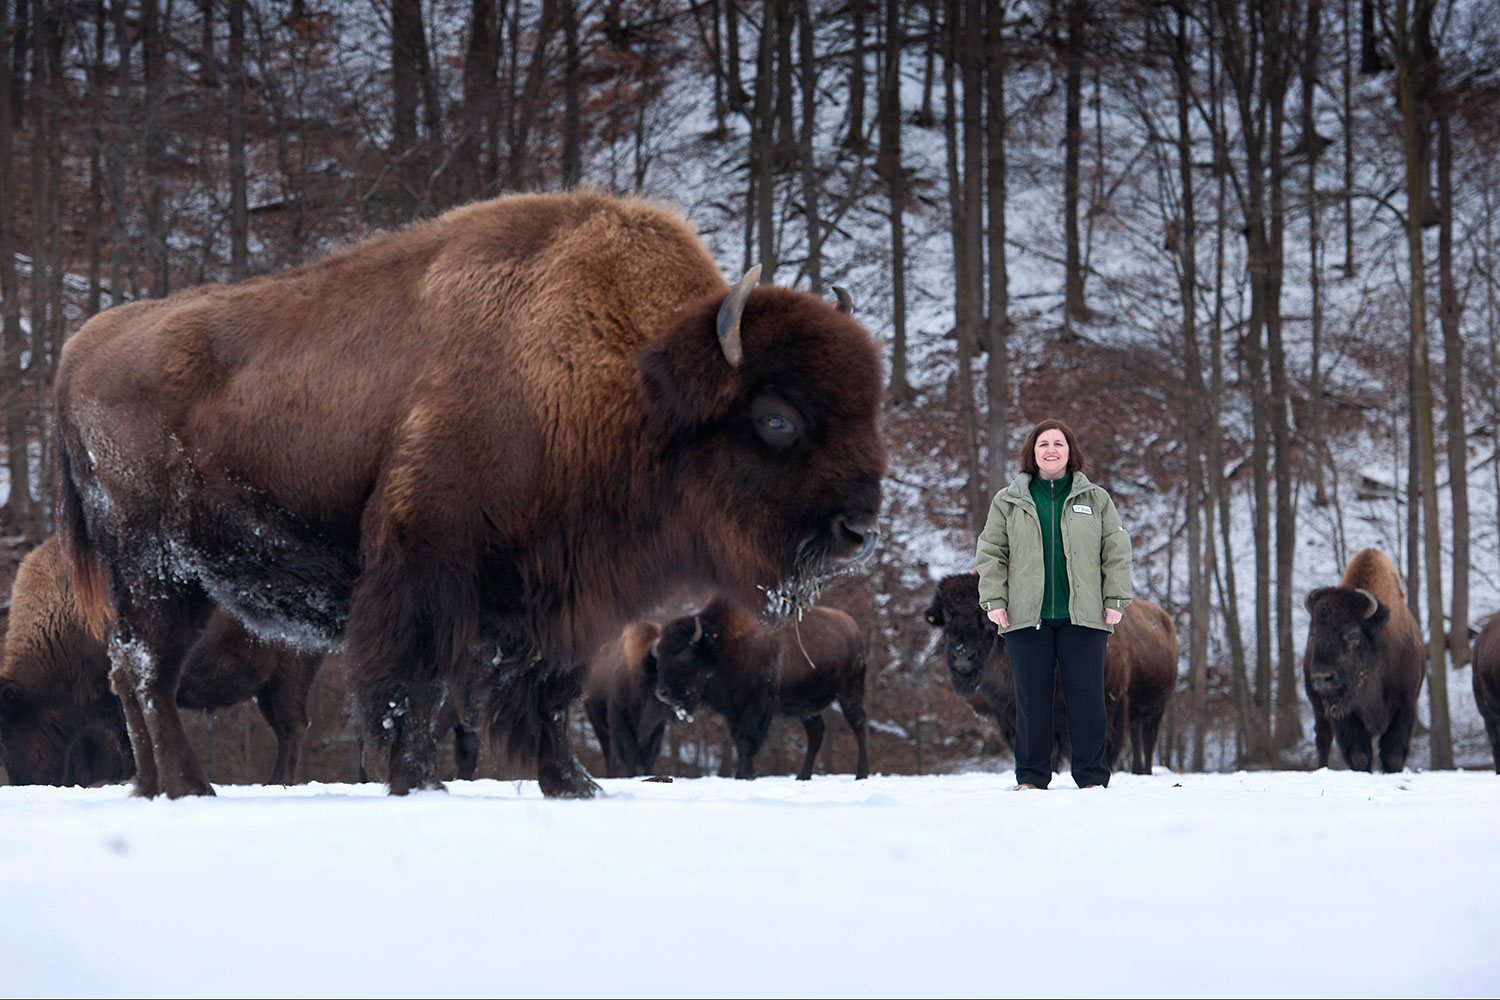 Guelph professor Gabriela Mastromonaco hopes to preserve bison in Canada.